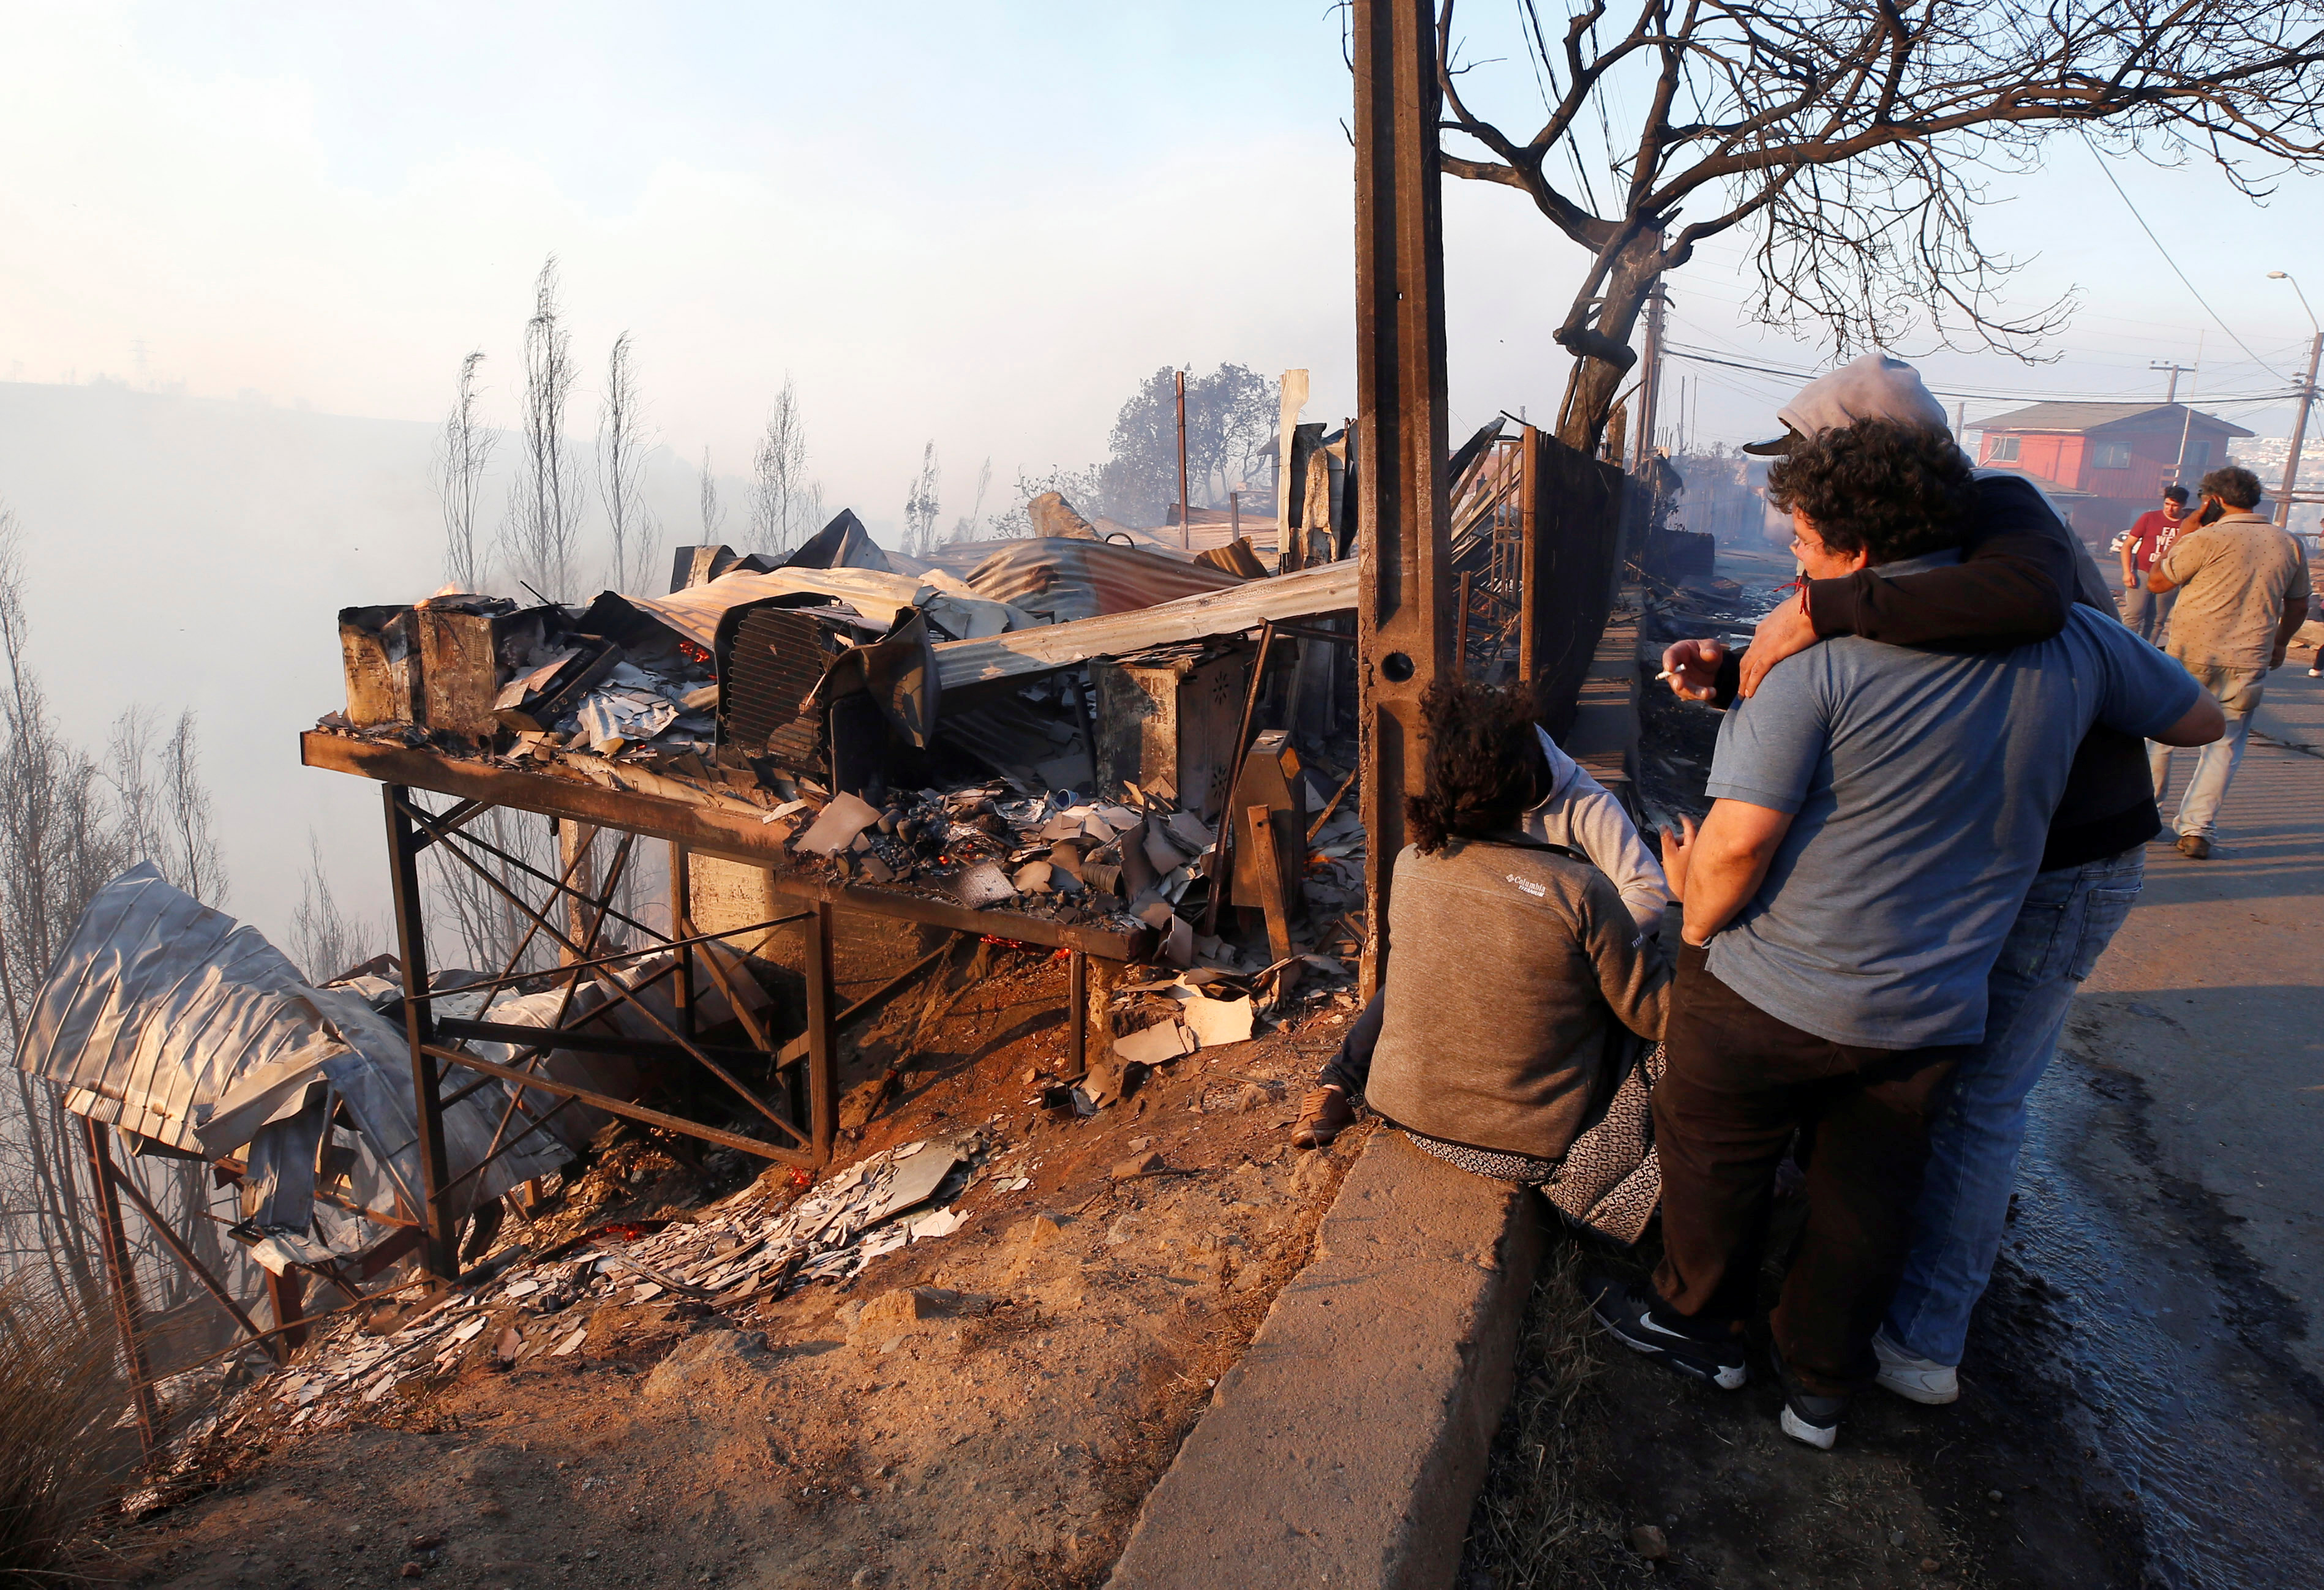 Unas 245 viviendas afectadas por incendio en Chile